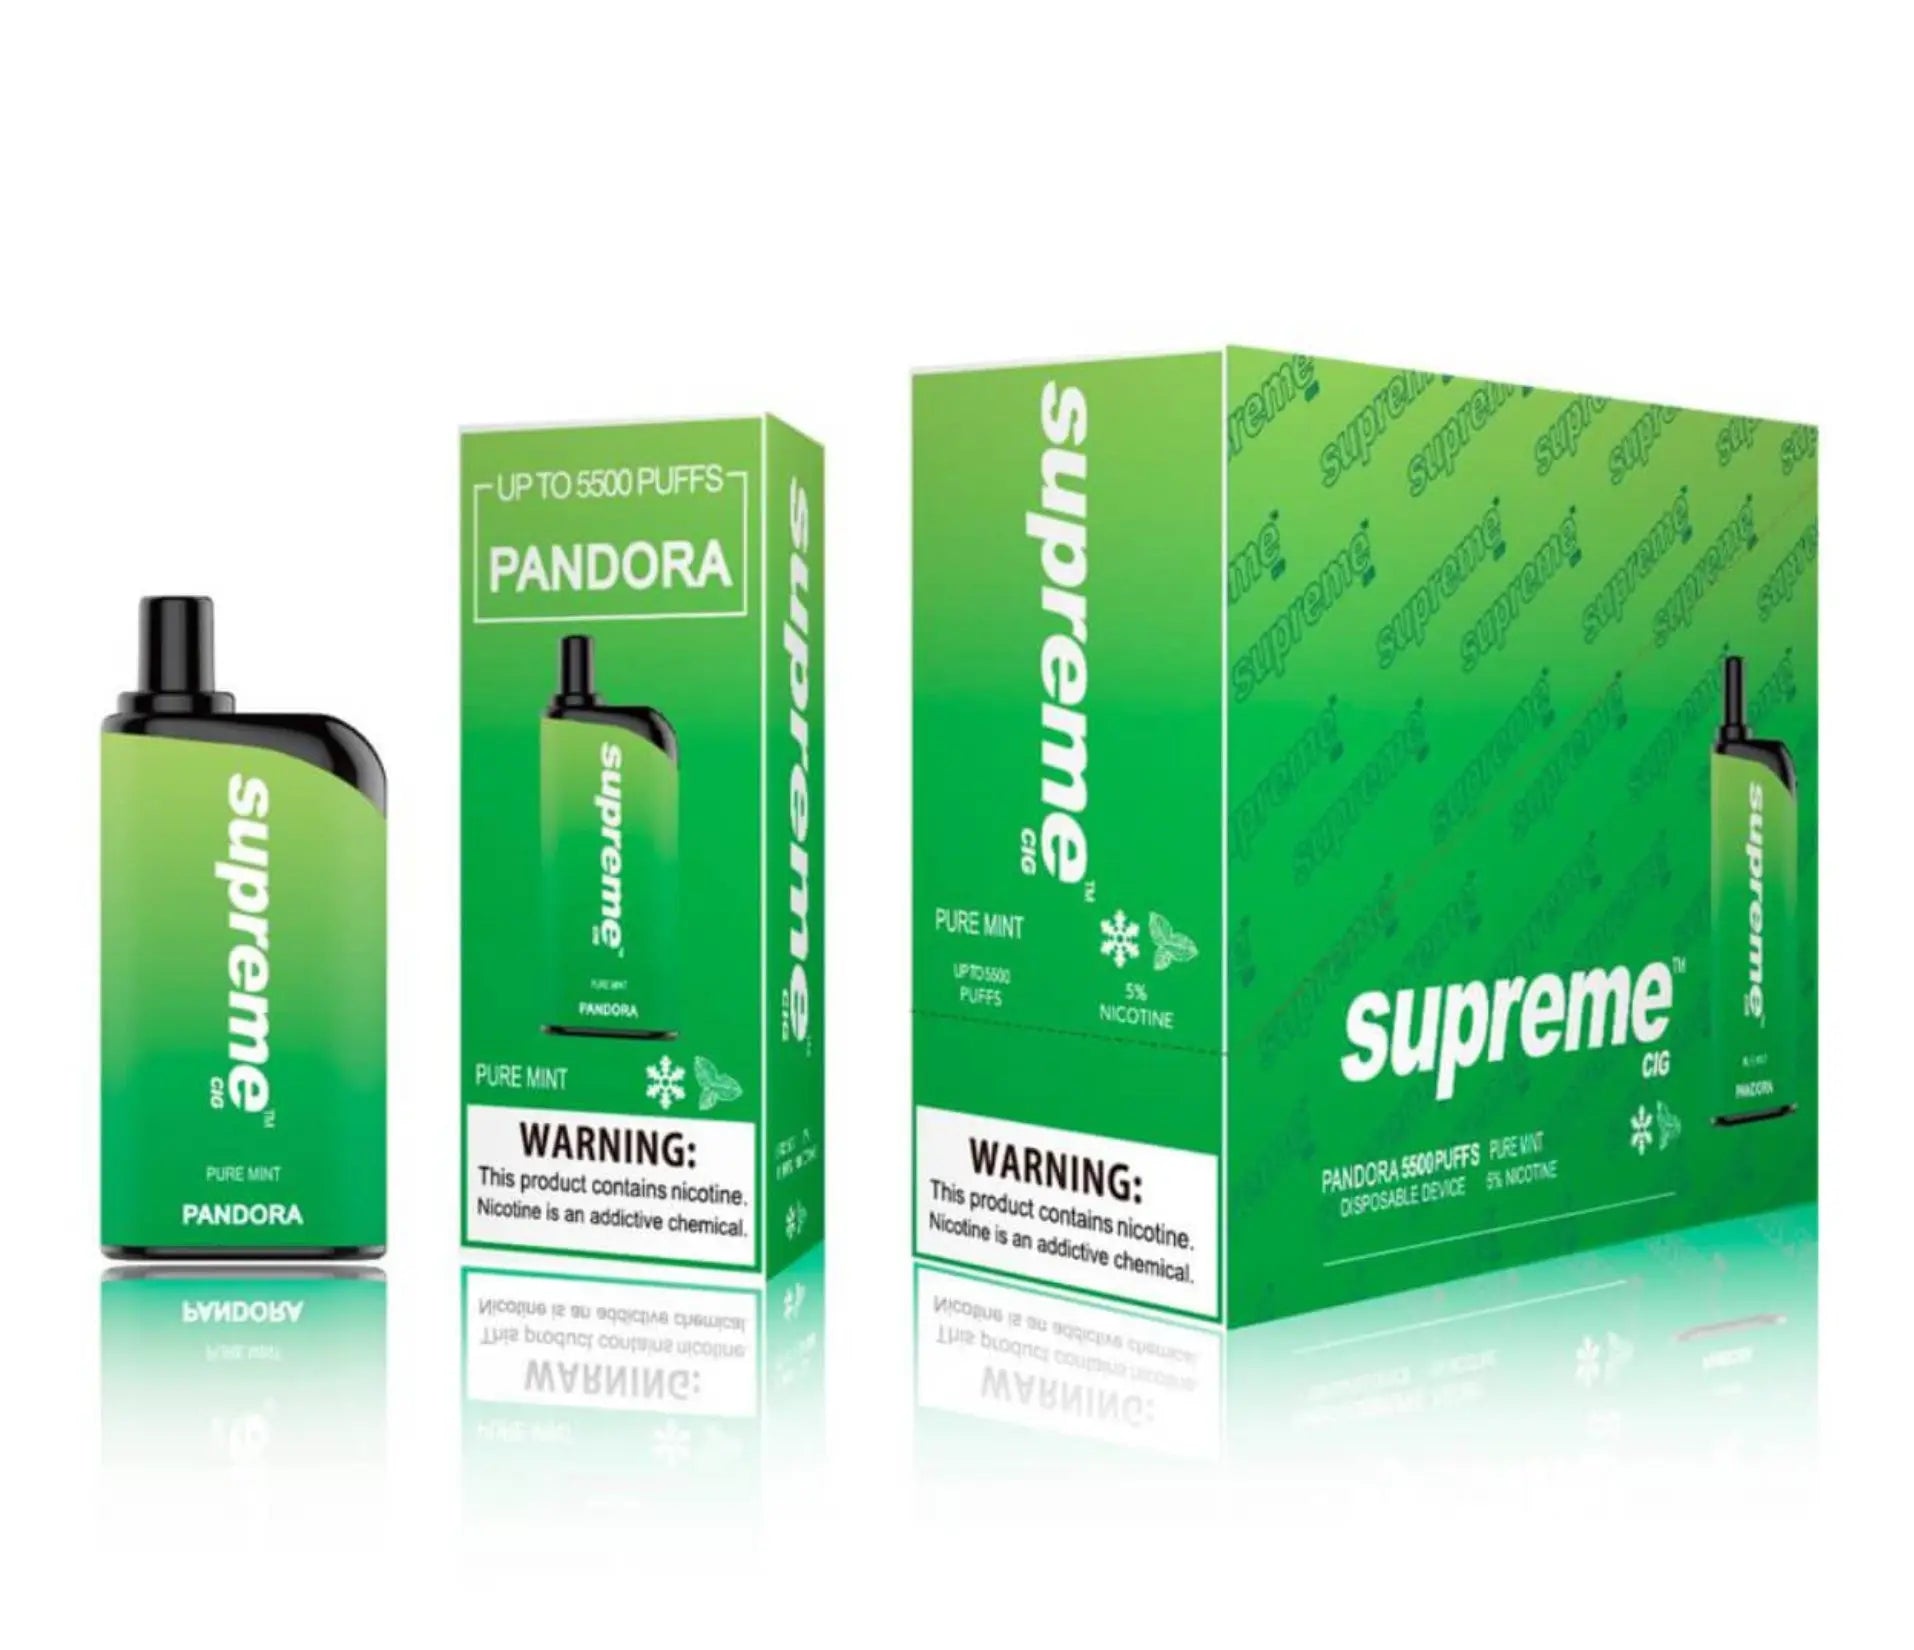 Supreme Pandora Pure Mint Flavor - Disposable Vape